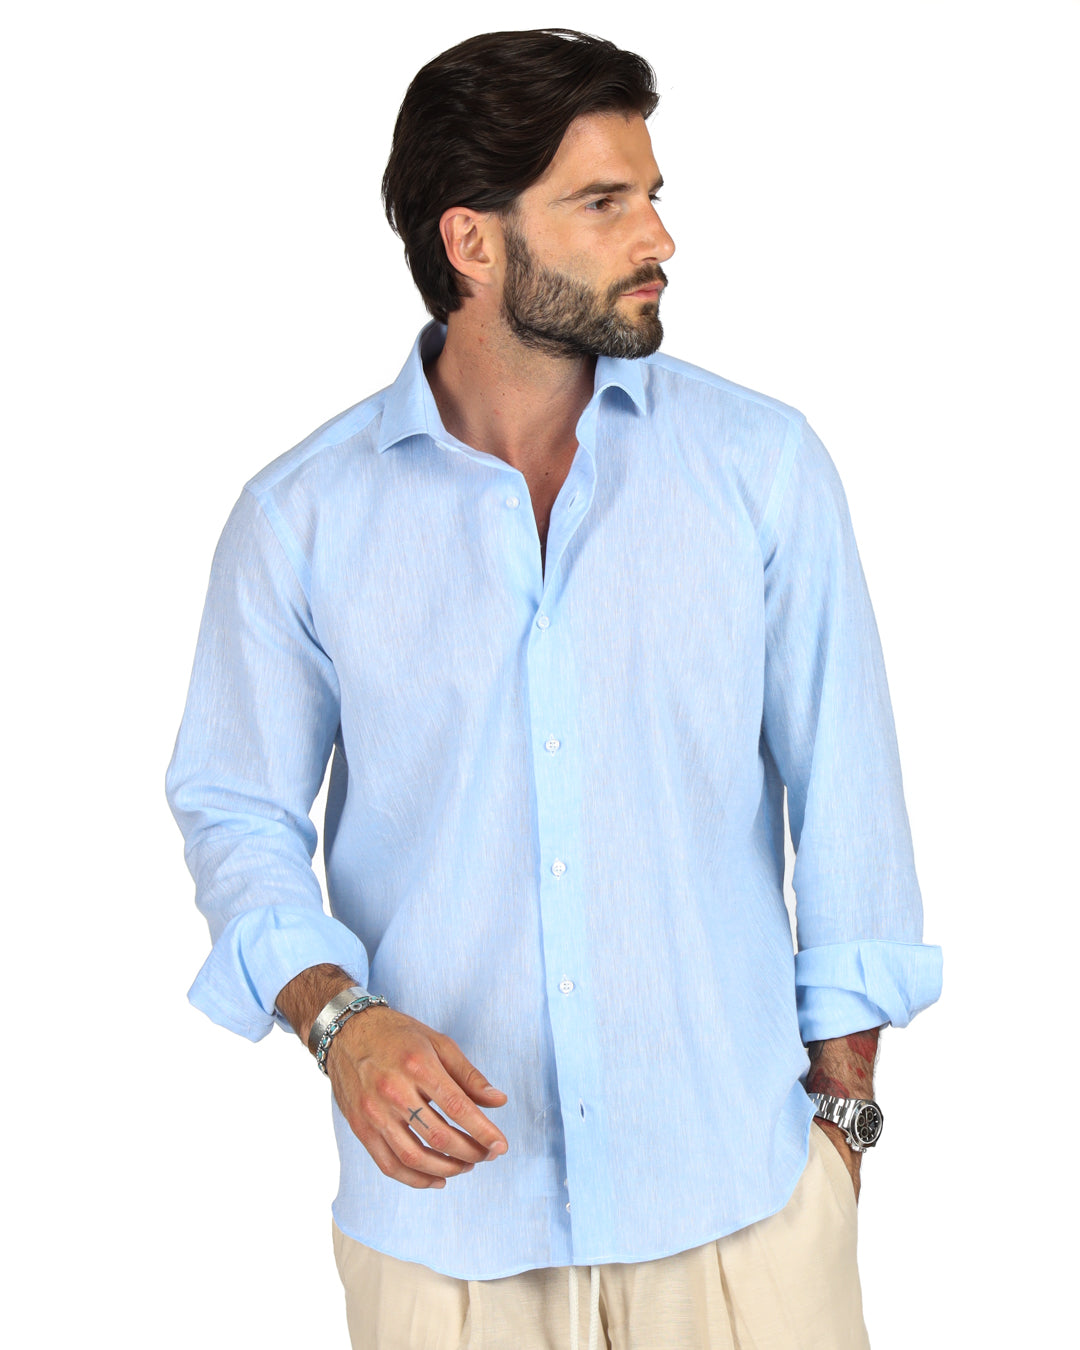 Praiano - Classic light blue linen shirt